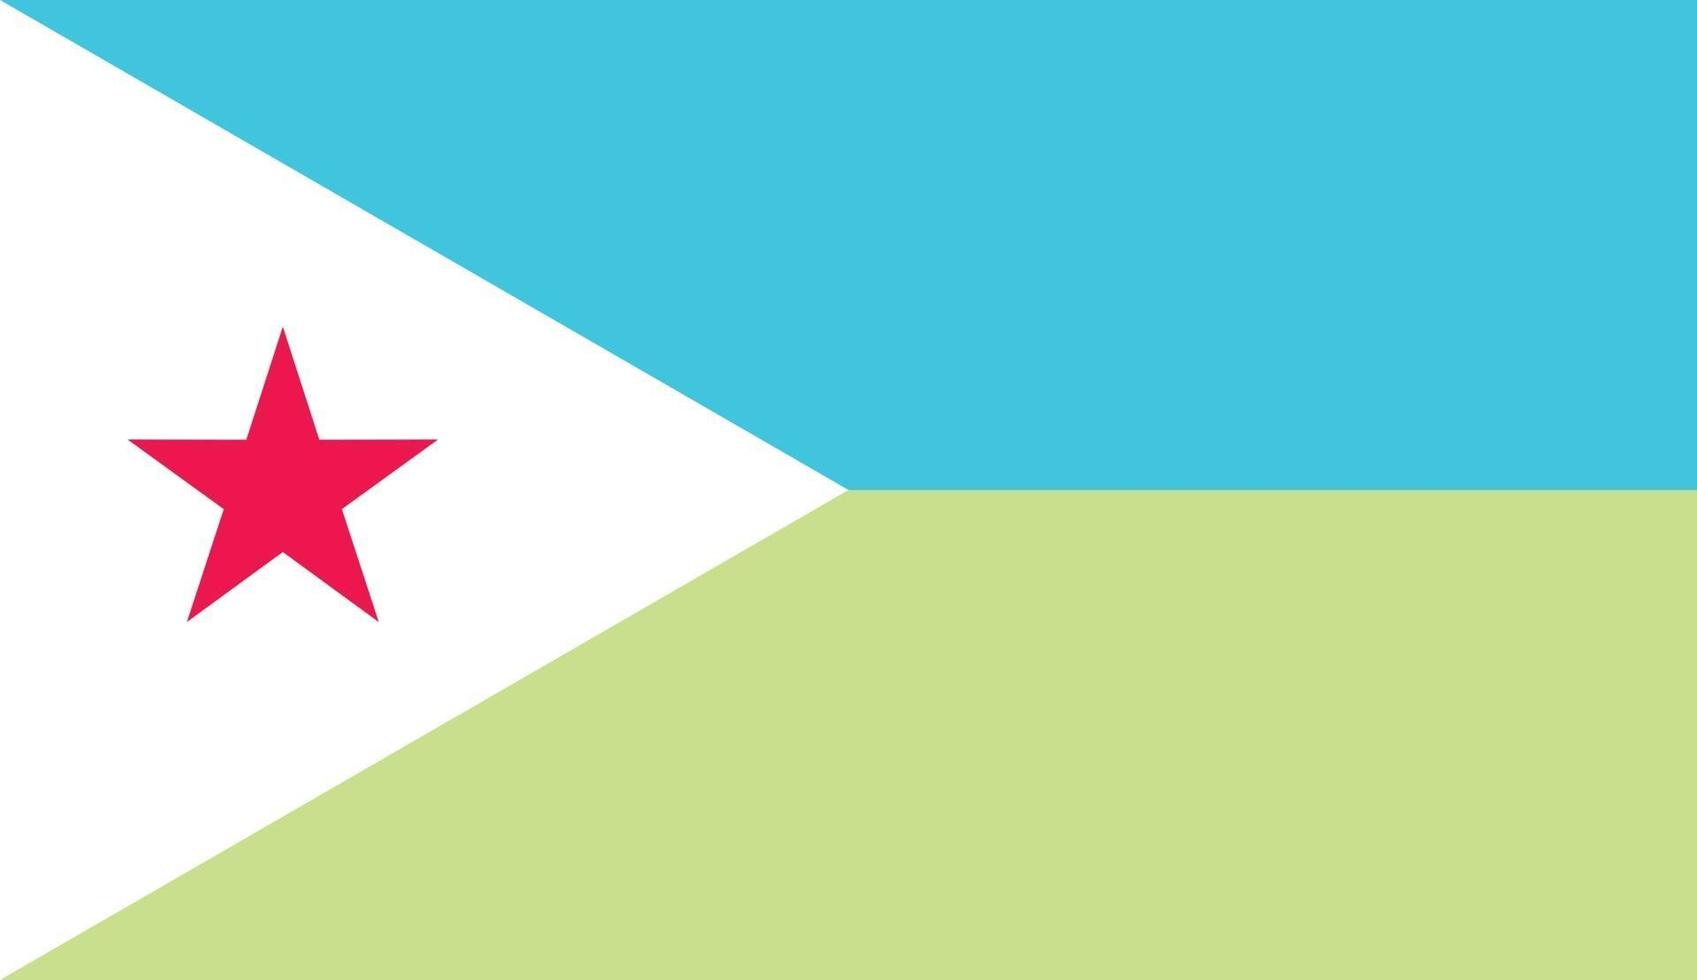 Djibouti officially flag vector